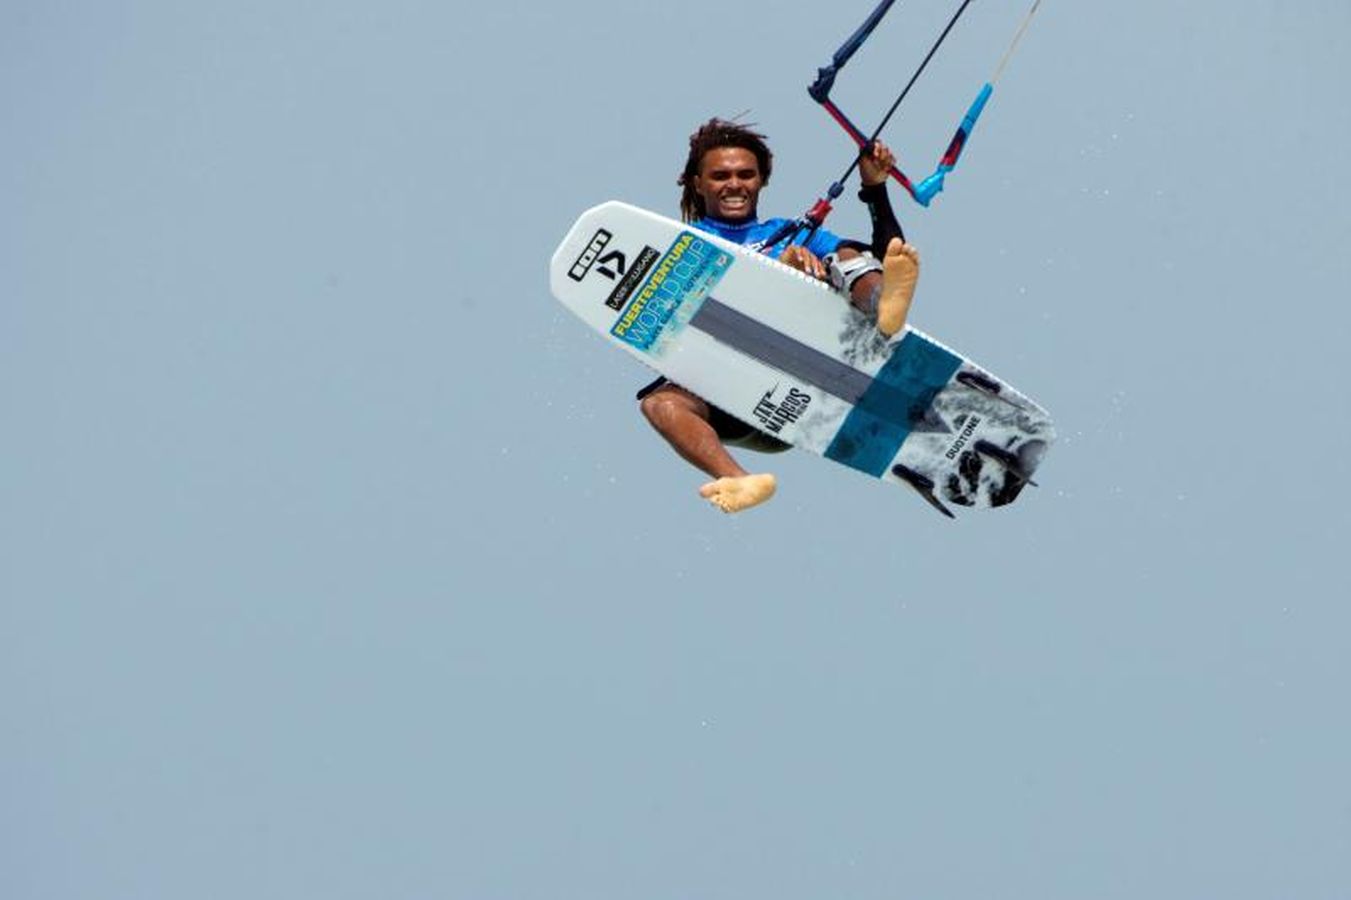 Este fin de semana se ha celebrado el campeonato del Mundo de windsurf y kitesurfing en las aguas de las playas de Jandía, en Fuerteventura.